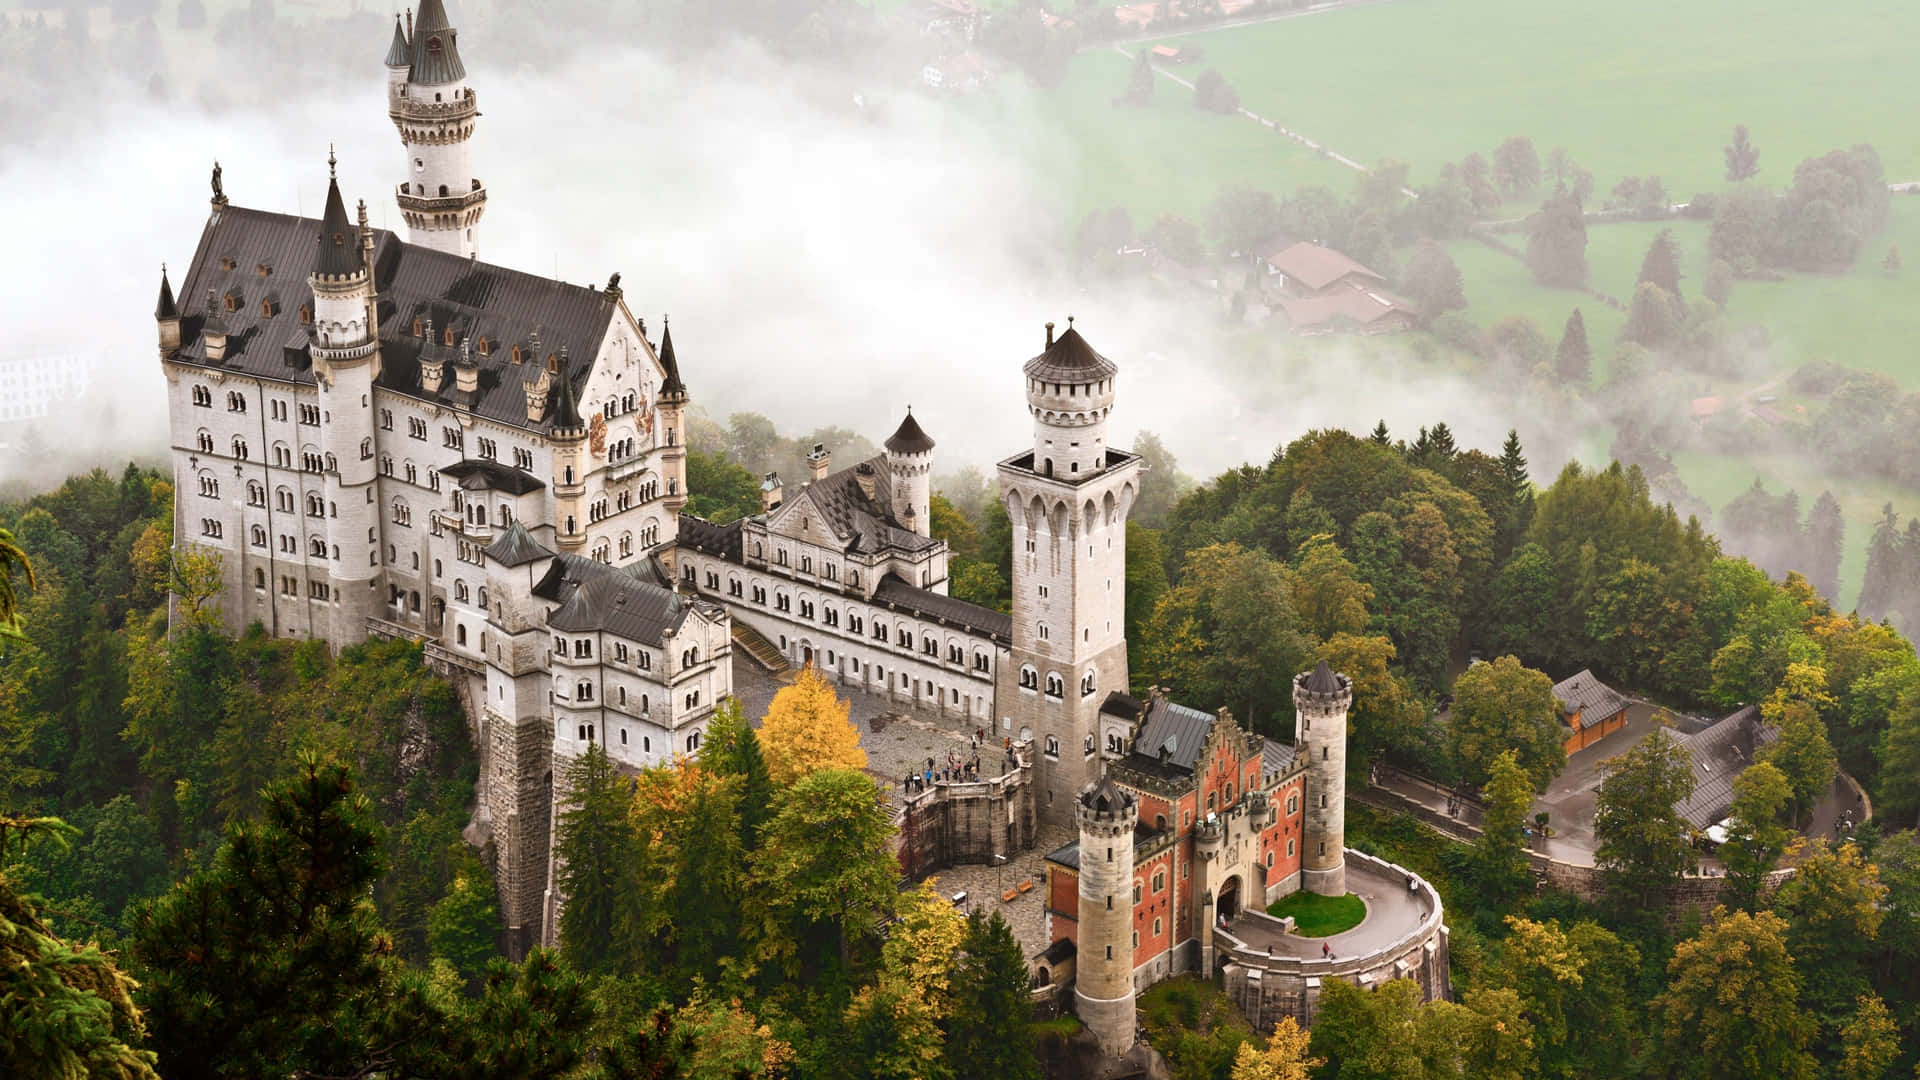 Majestic Fairytale Castlein Mist Wallpaper